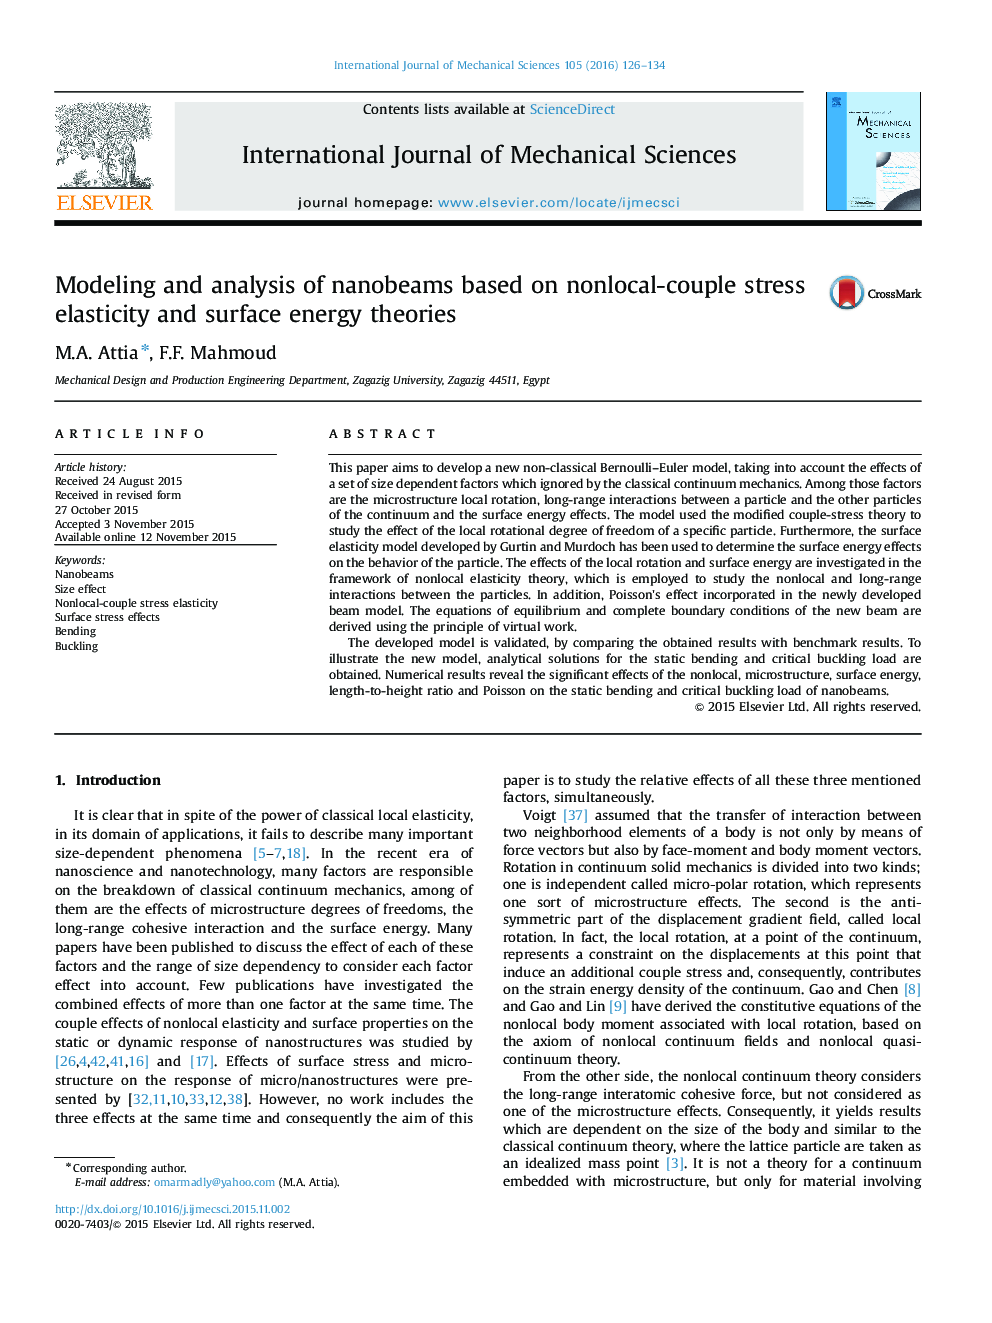 مدل سازی و تجزیه و تحلیل نانوبلهای مبتنی بر کشش استرس انقباضی غیرخطی و نظریههای انرژی سطحی 